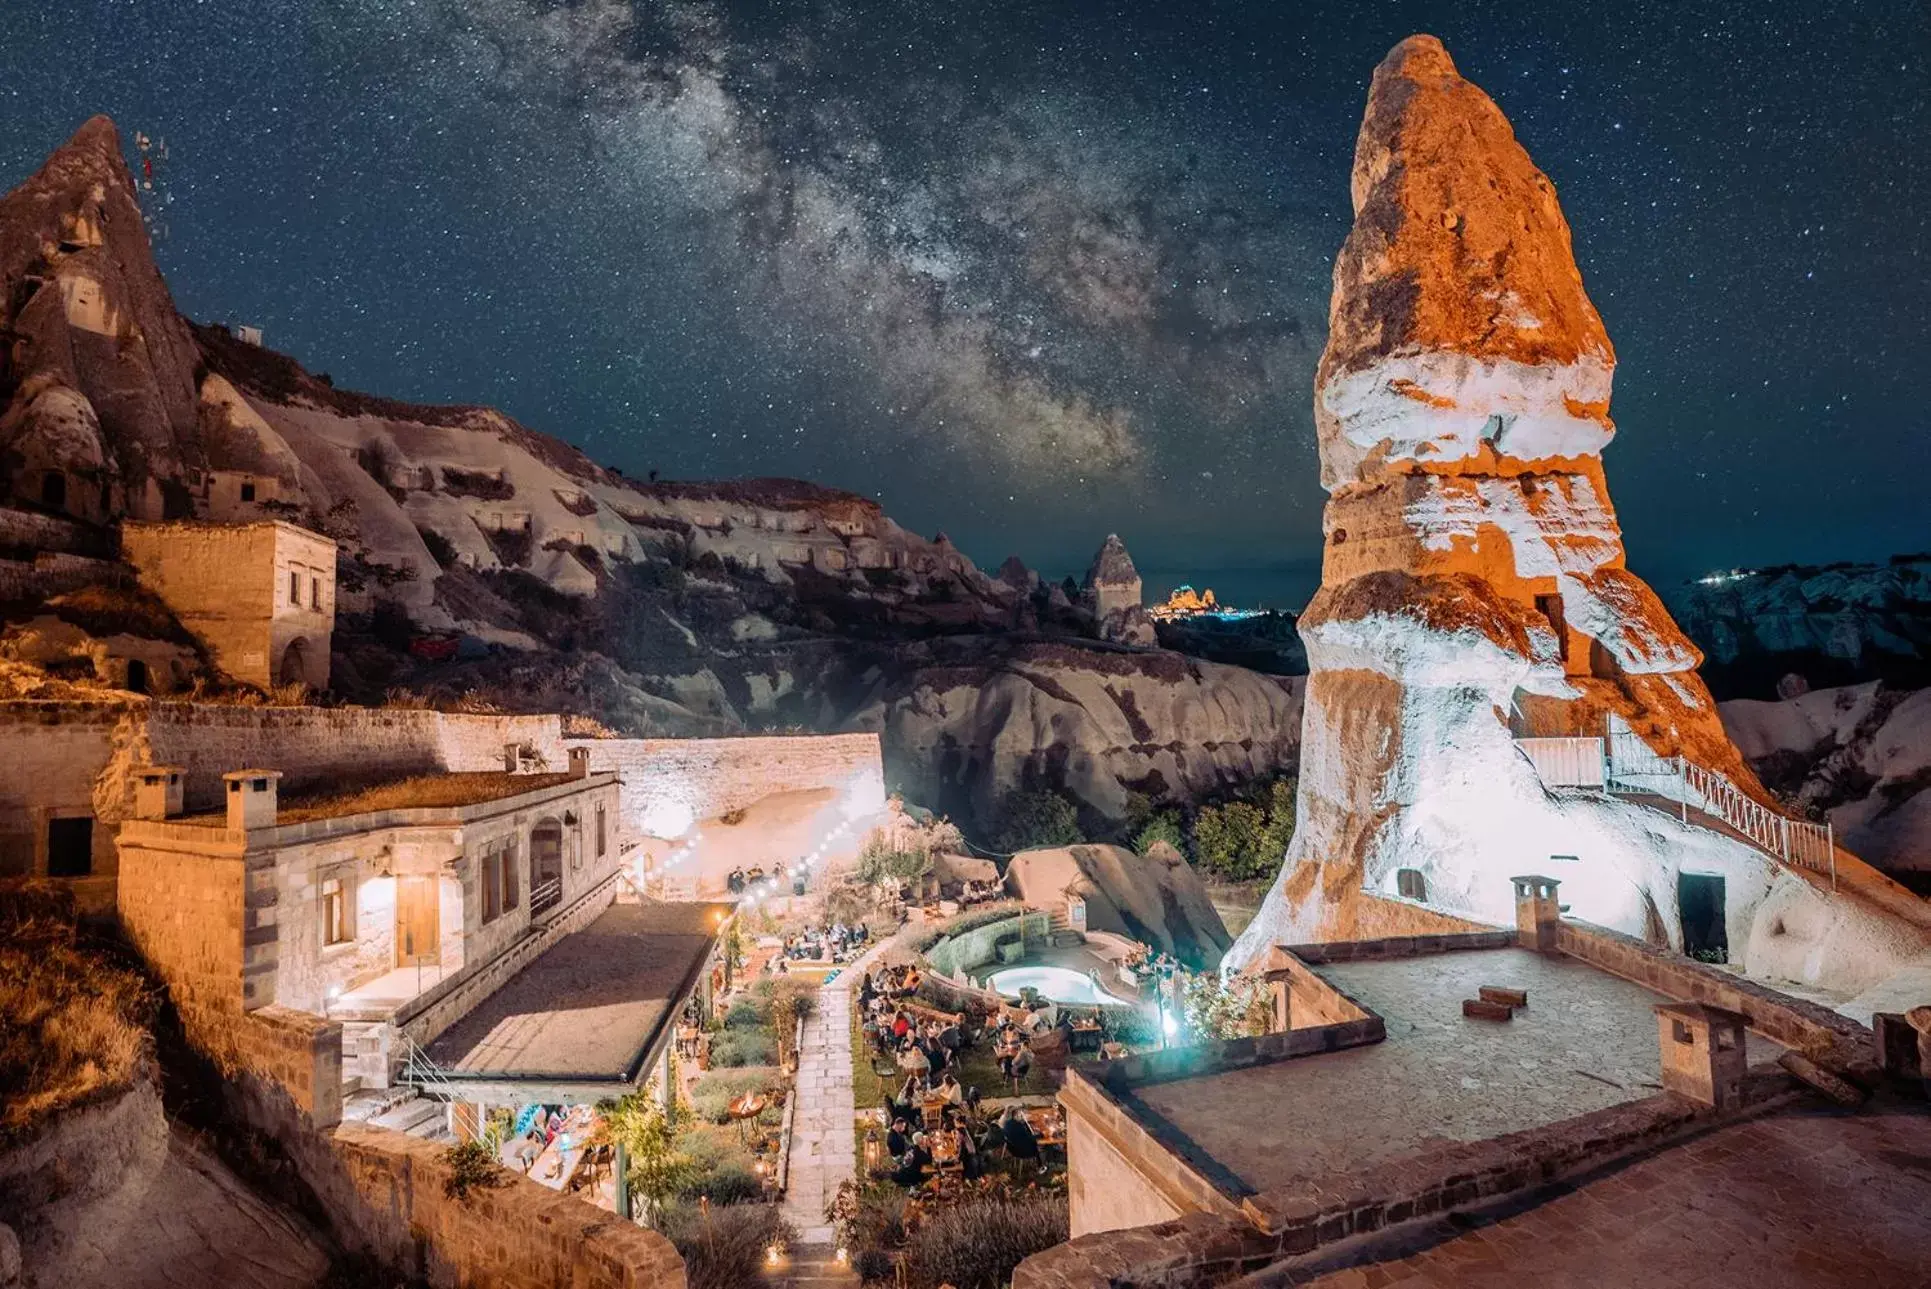 Evening entertainment in Aza Cave Cappadocia